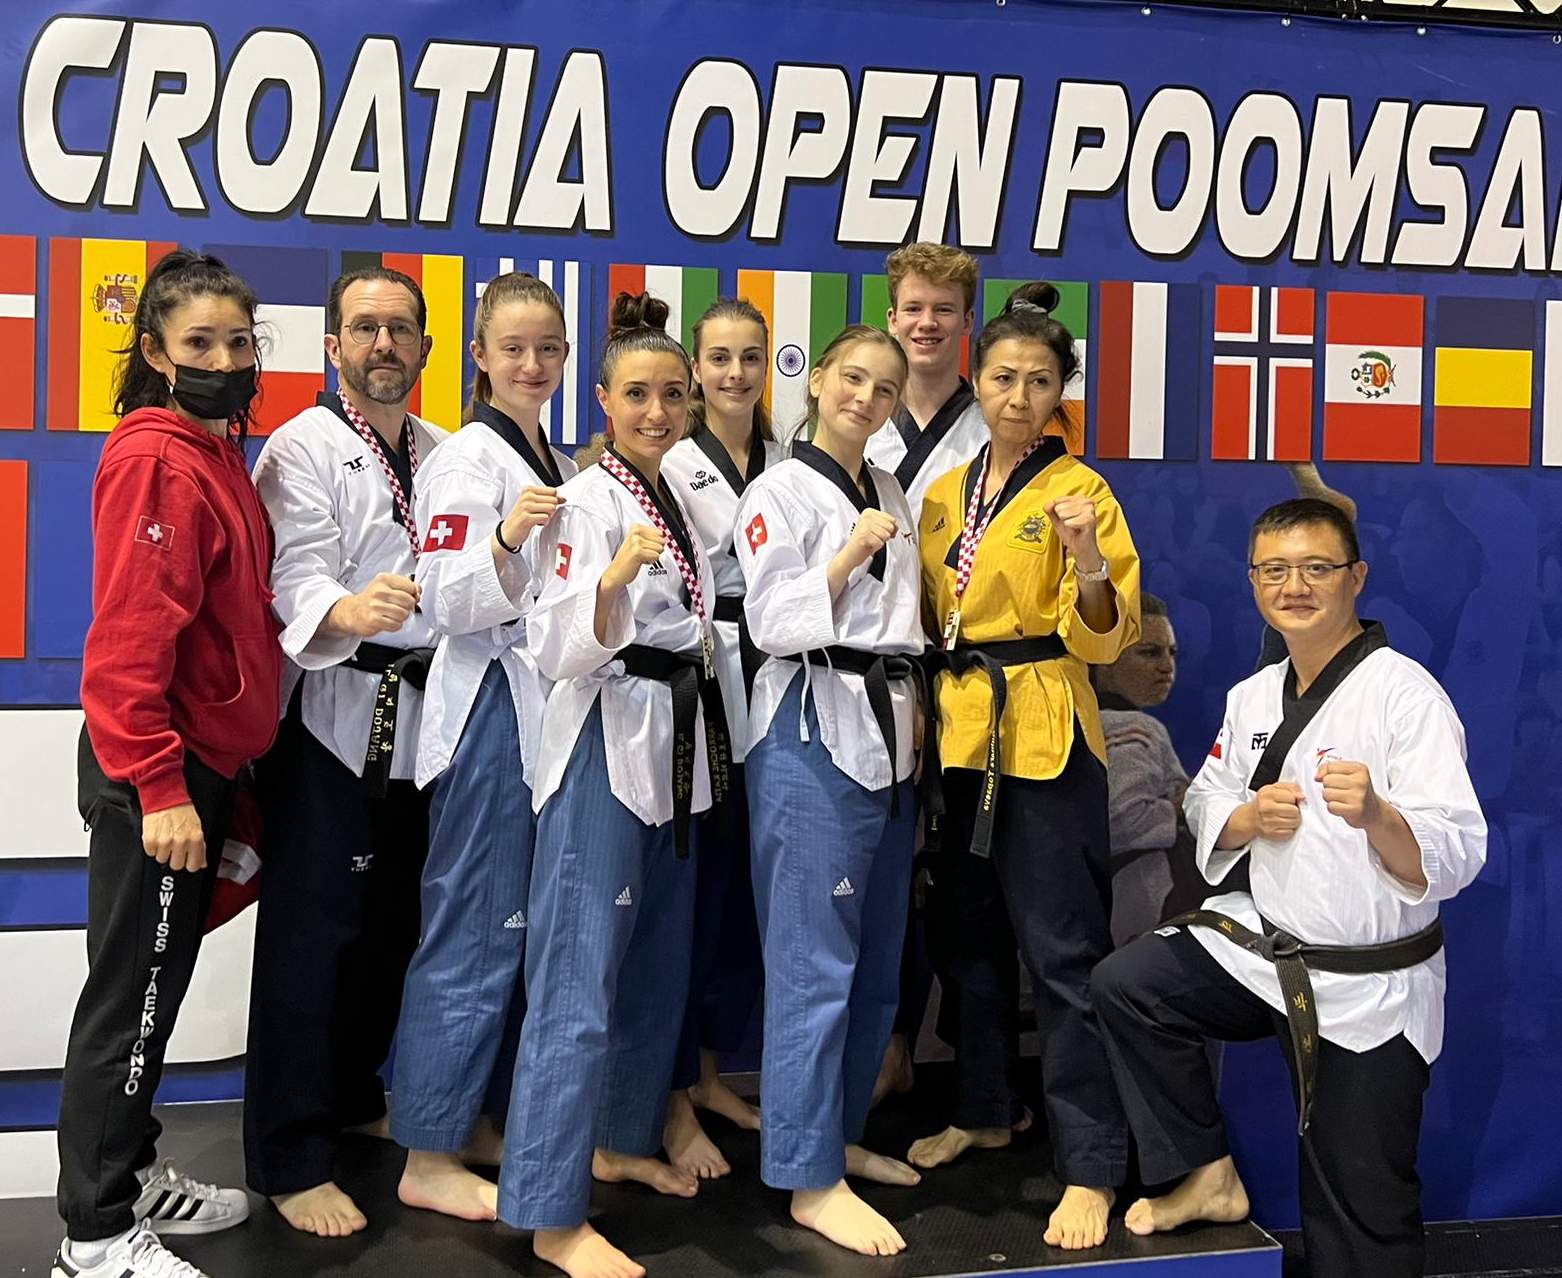 2 Golds (Katia & Gulnara) : 1 Bronze (François) – Swiss Team *Croatia Open Poomsae 2022*